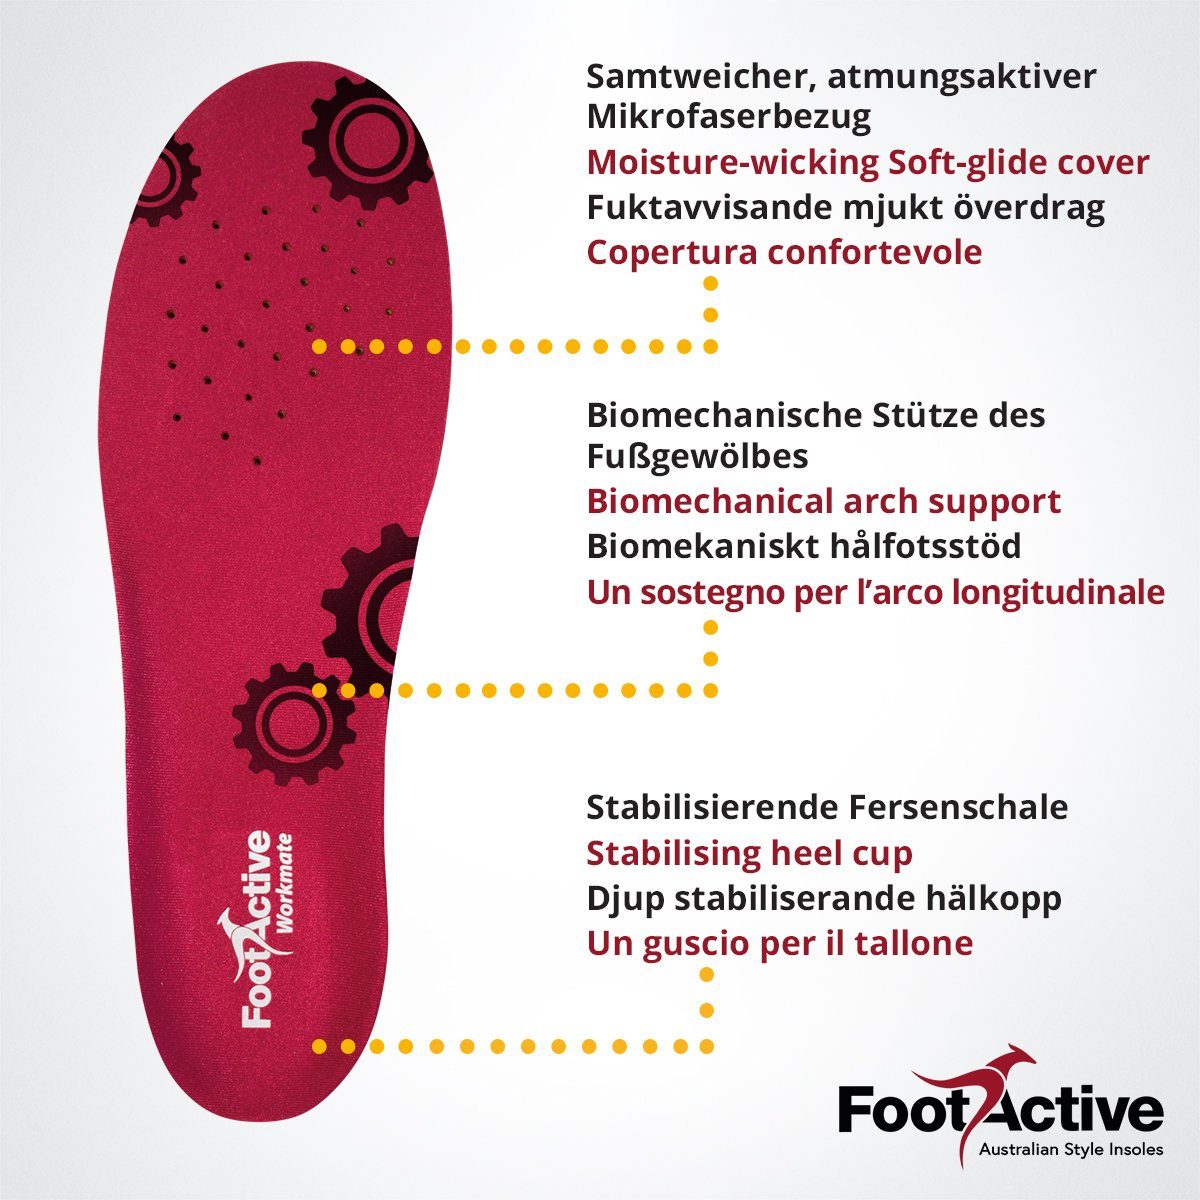 WORKMATE, FootActive Halt auf Einlegesohlen für Ihre Schützt Füße optimale FootActive und und Beruf Ideal Böden. Alltag harten Fester - Dämpfung.